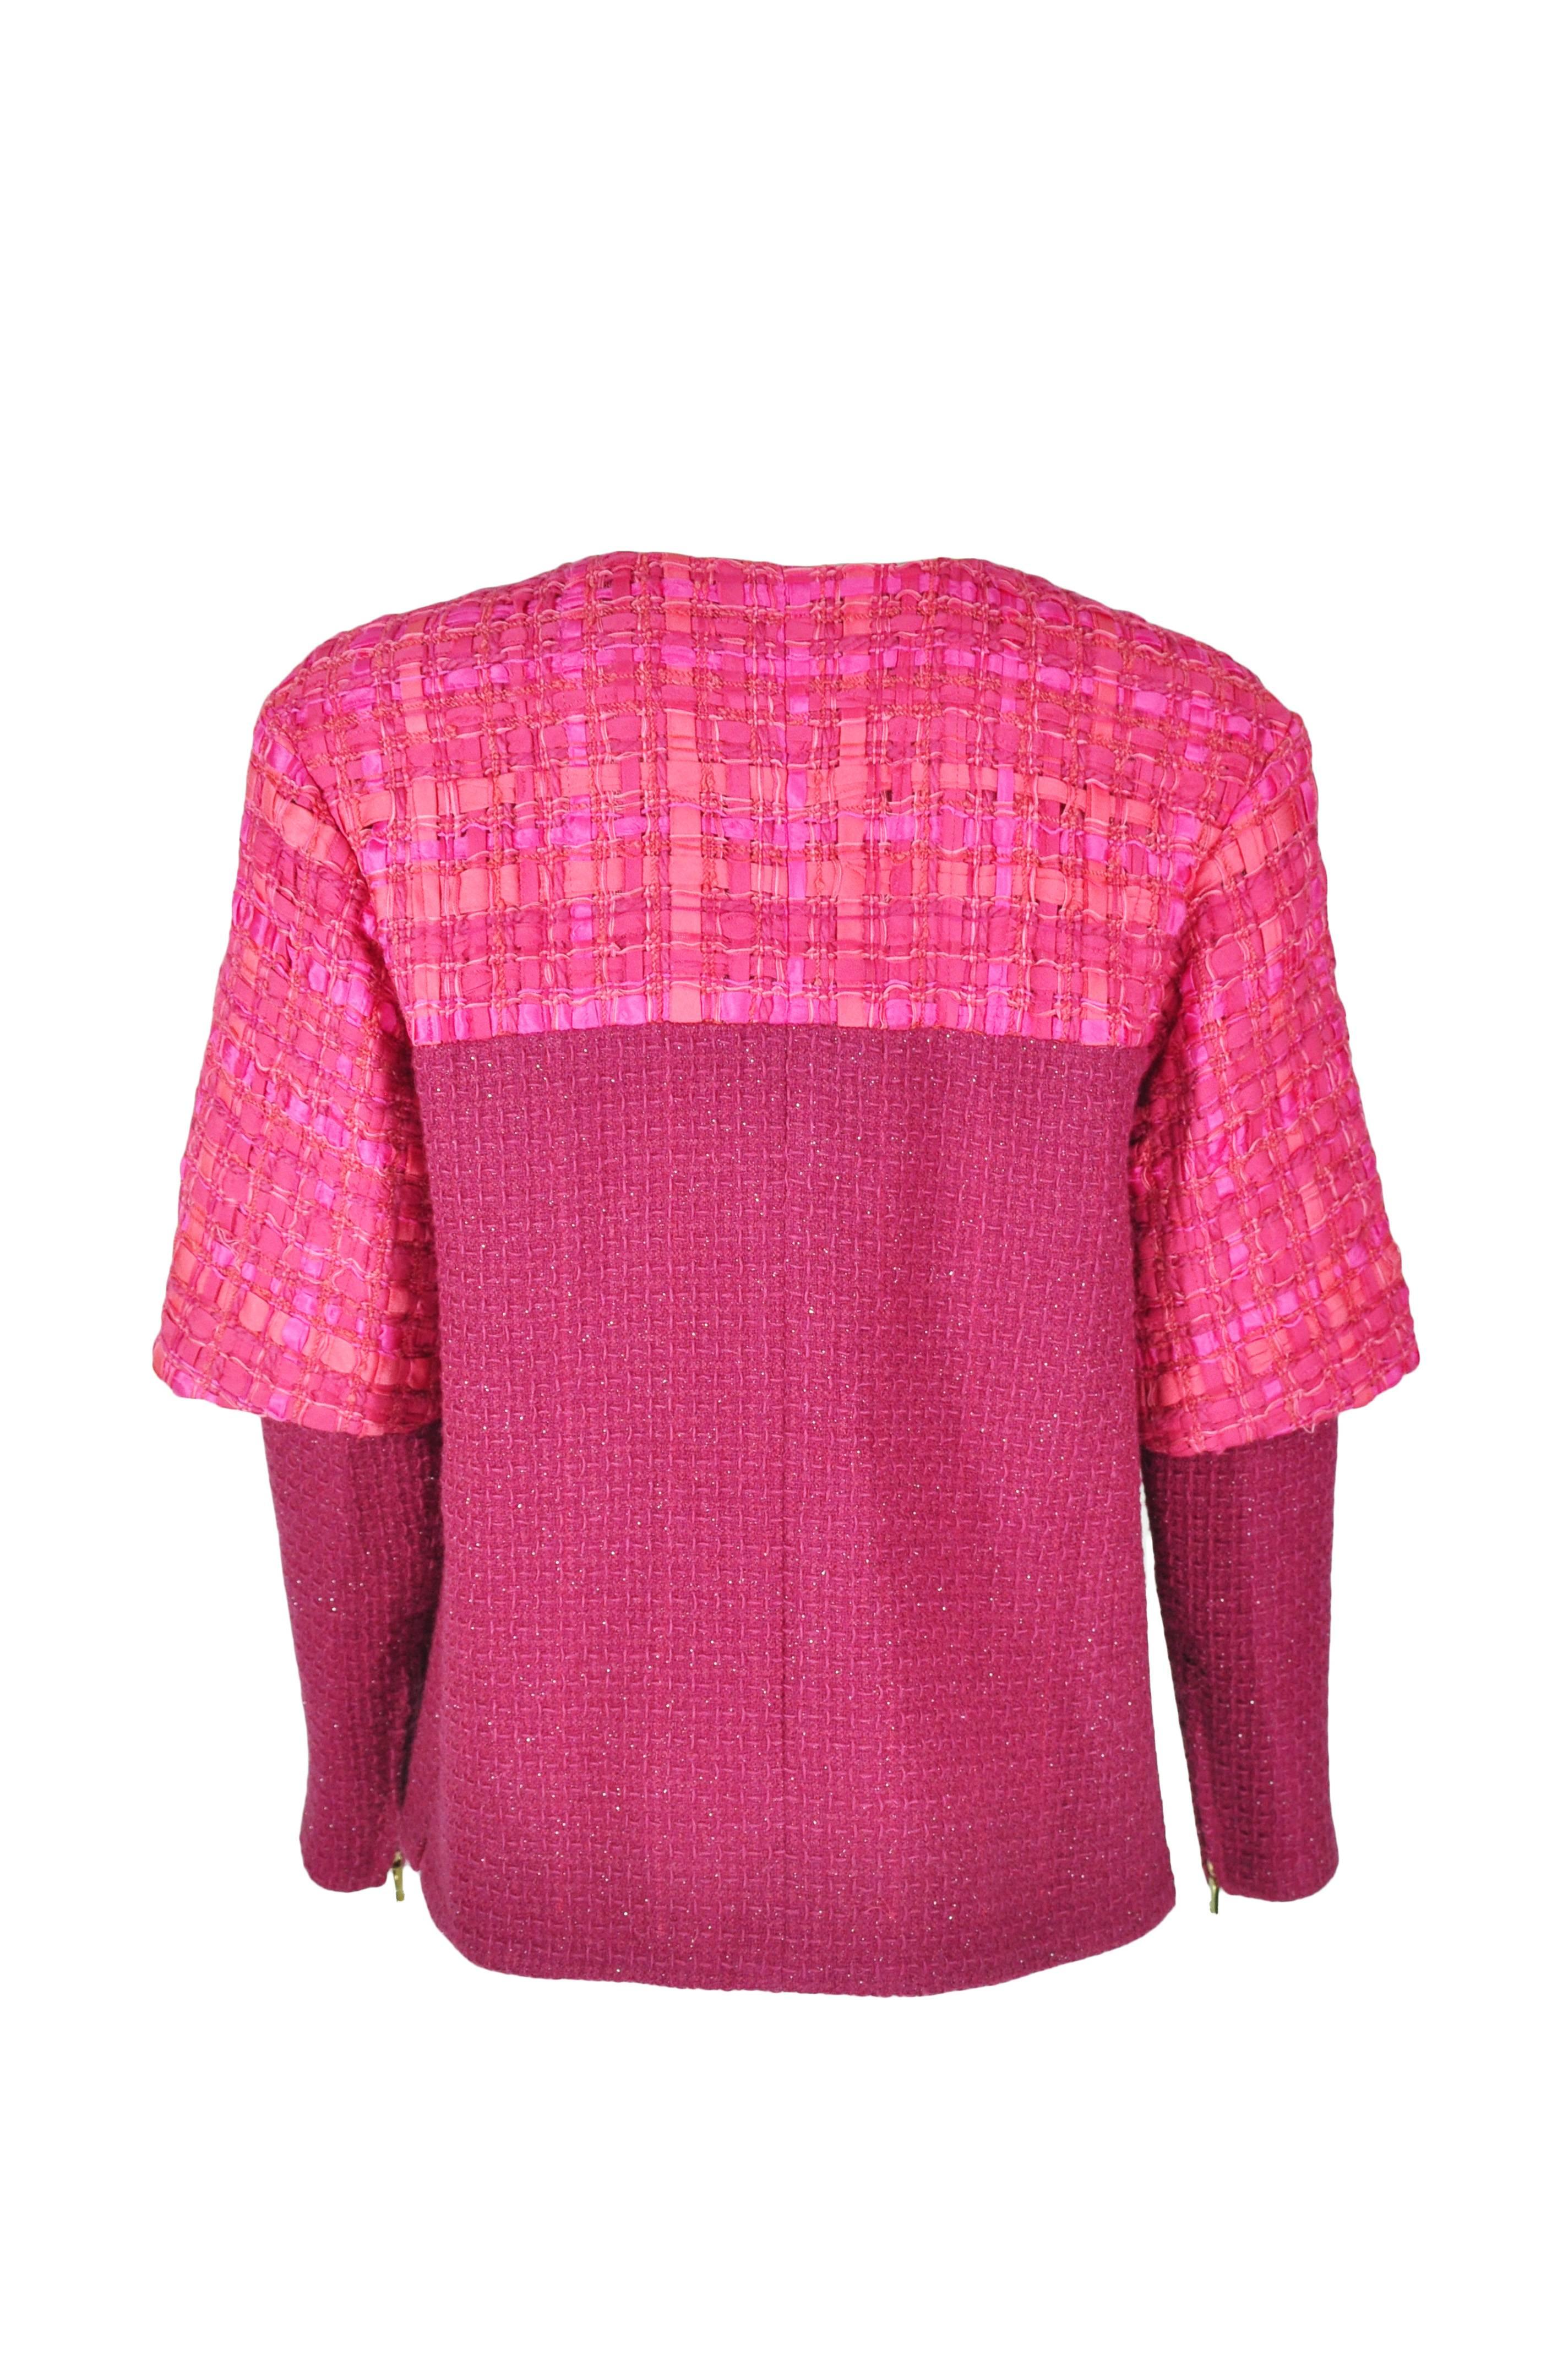 Pink Chanel Runway Fuchsia Silver Fantasy Tweed Jacket, F / W 2016  For Sale